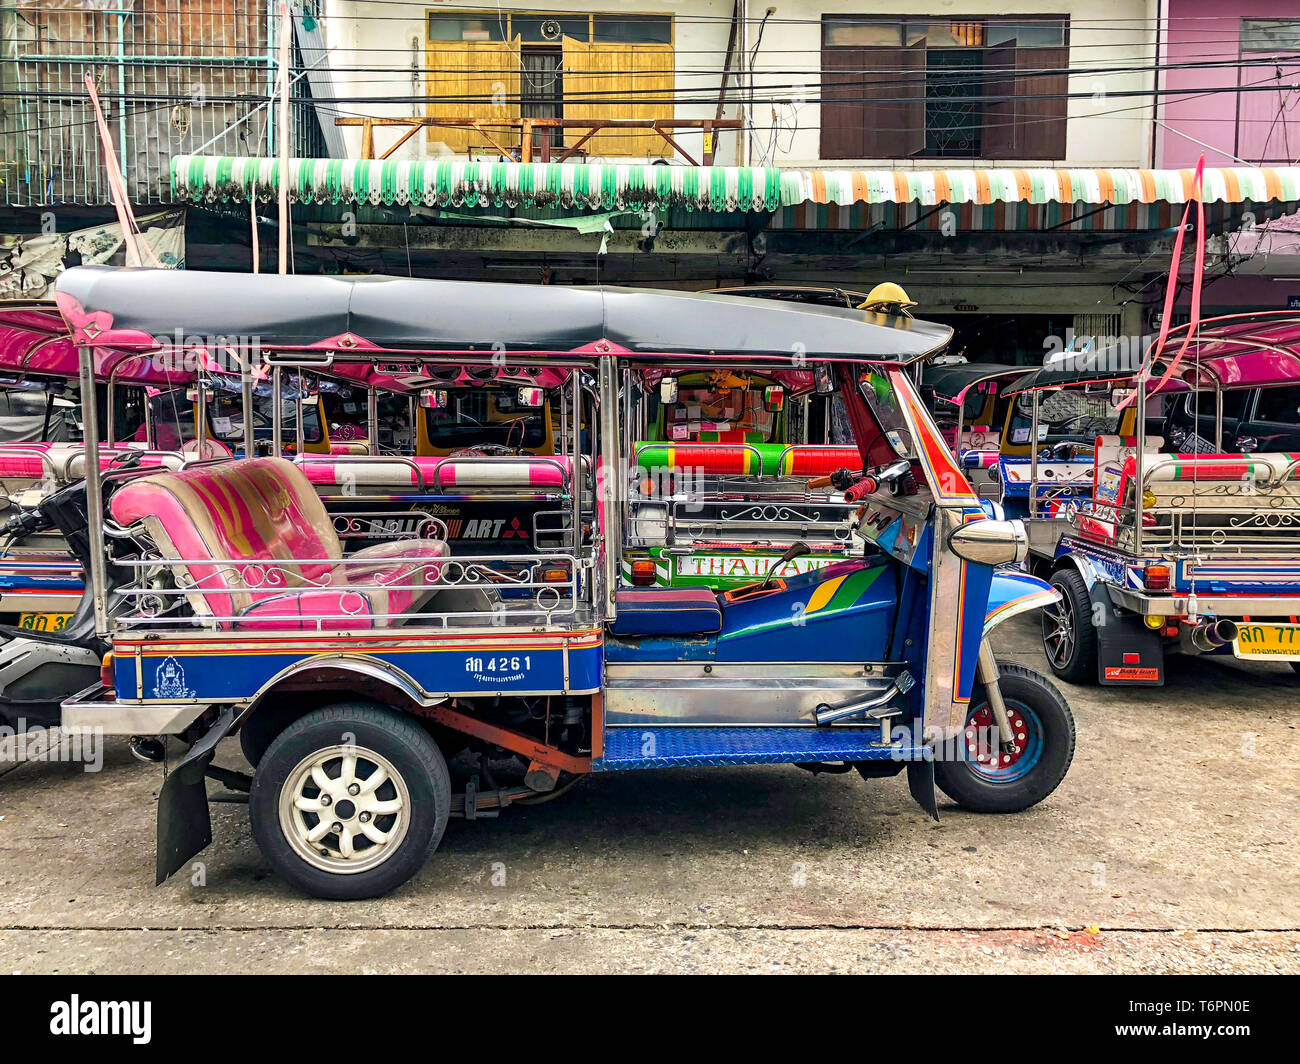 Bangkok, Thailand - 29 Aug, 2018: Thailand Taxi called 'Tuk Tuk' or 'Sam Lor', it has 3 wheels and drive around Bangkok, Thailand. Stock Photo